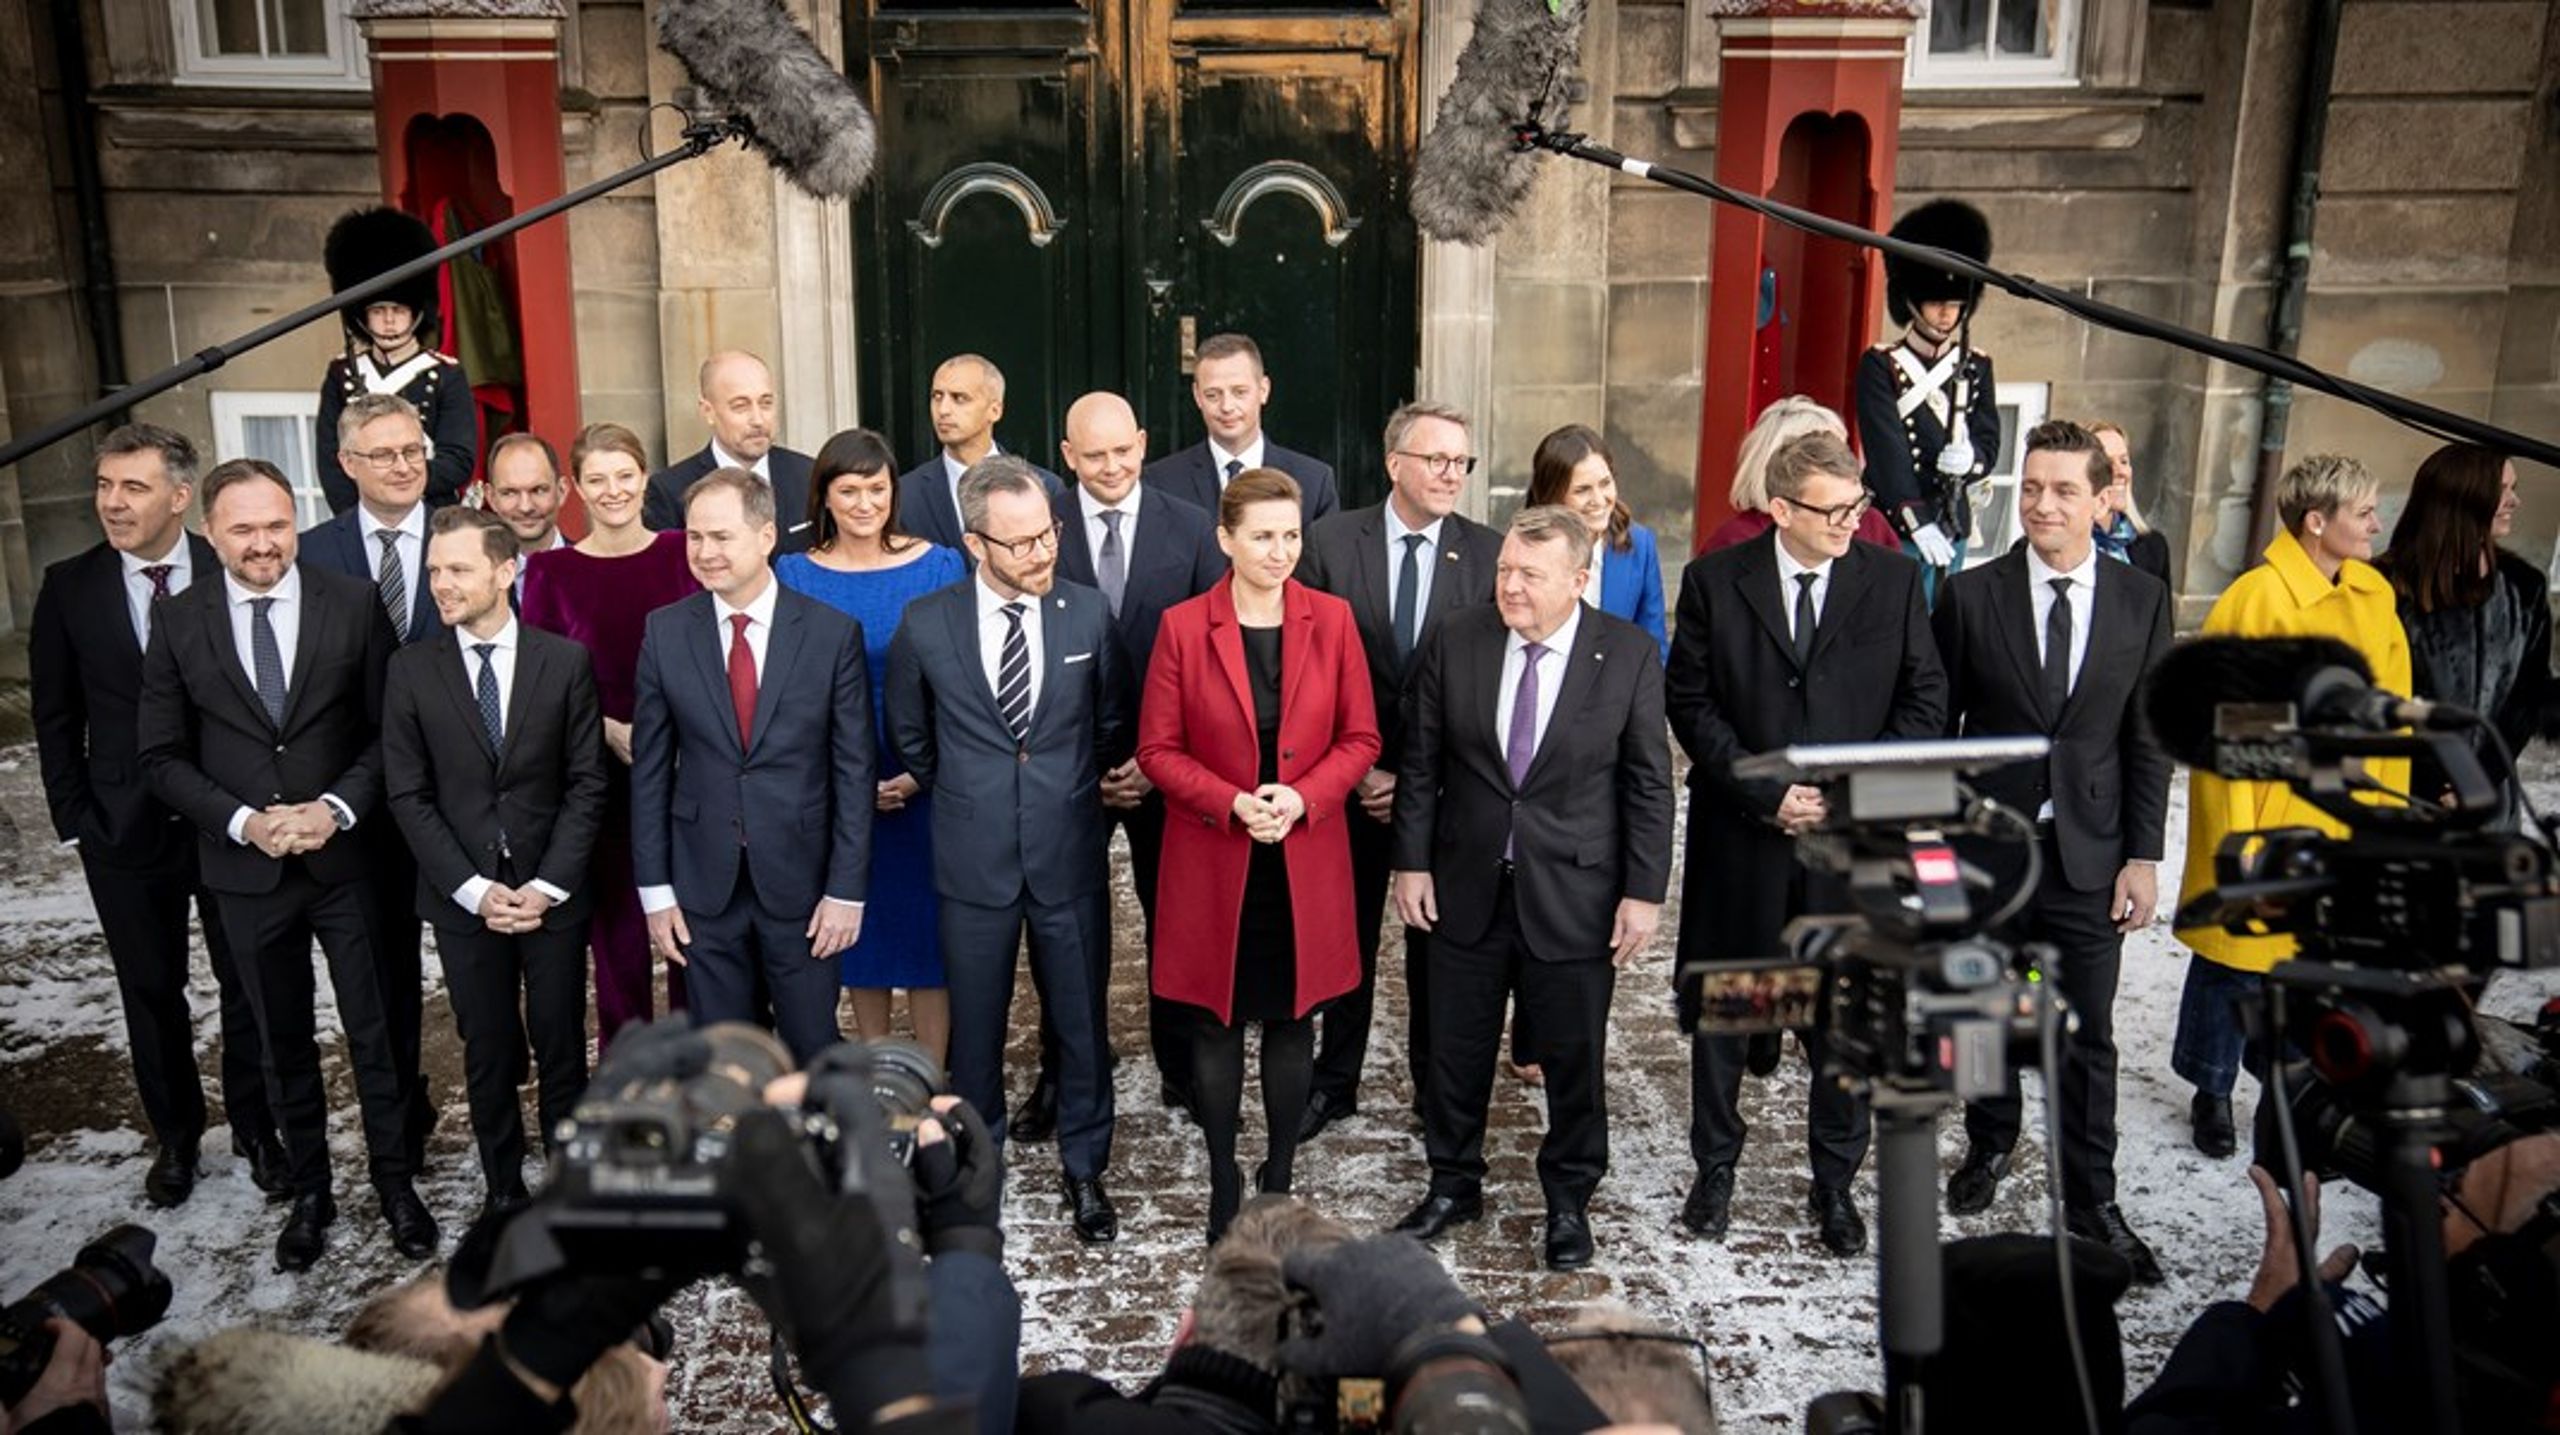 SVM-regeringen blev præsenteret på Amalienborg slotsplads den 15. december 2022, og har derfor siddet ved magten i over 100 dage.&nbsp;